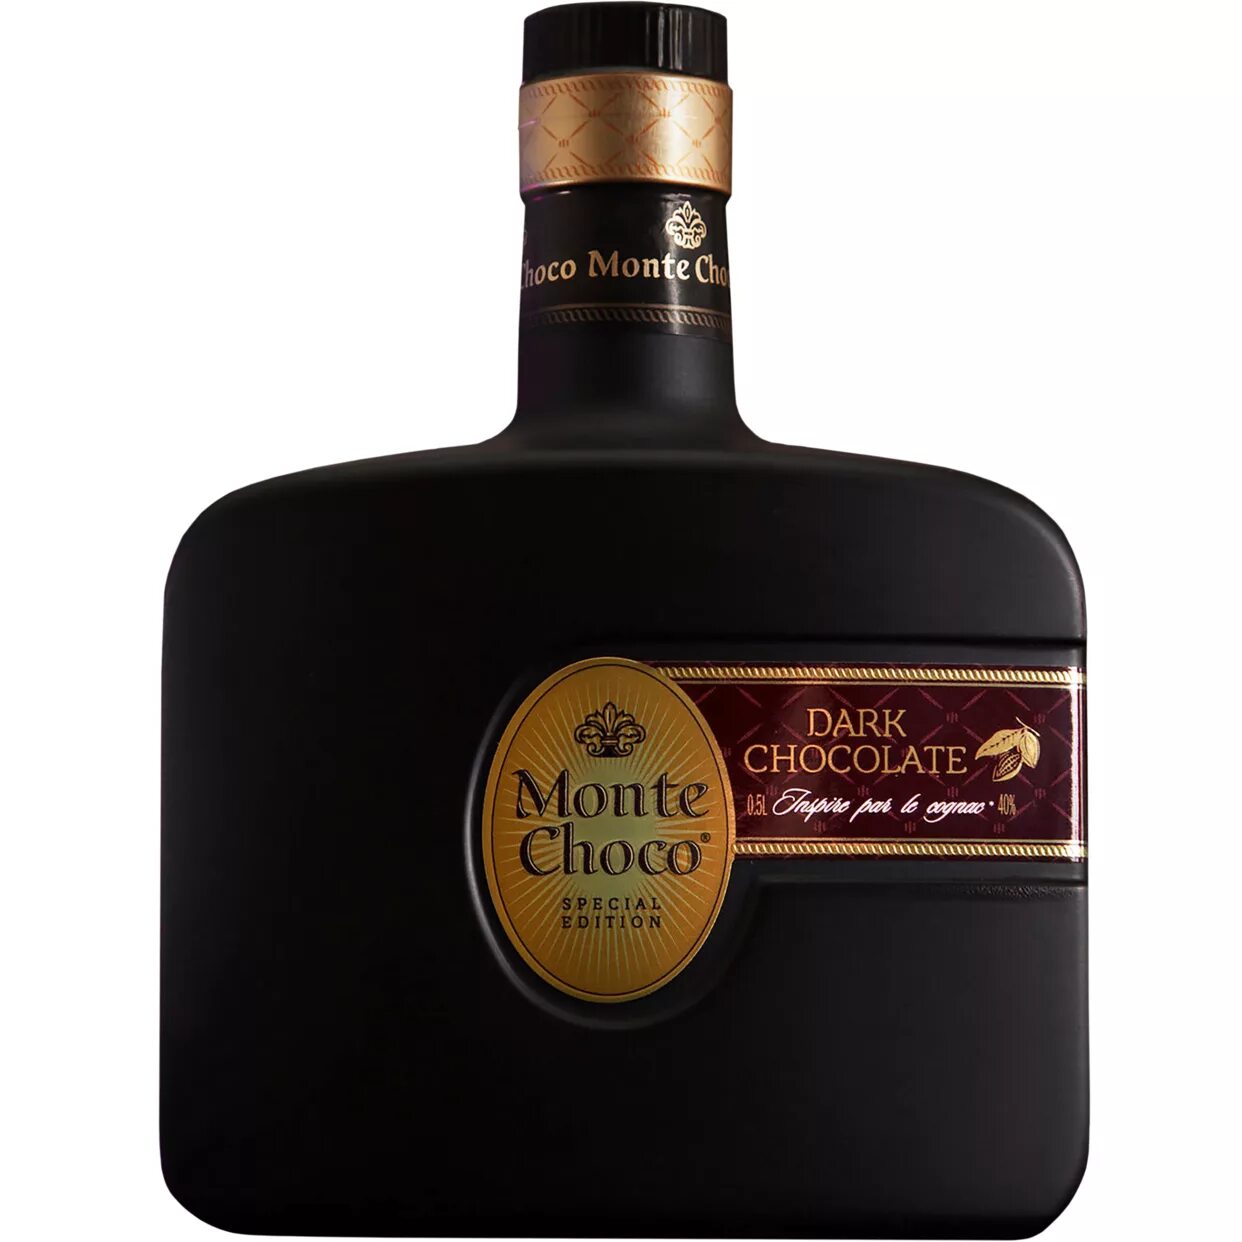 Monte choco irish. Монте Чоко дарк чоколате. "Monte Choco" Dark Chocolate, 0.5 л. Кокт.Monte.Choco Dark Chocolate 40% 0.5. Коньяк Monte Choco Dark Chocolate.